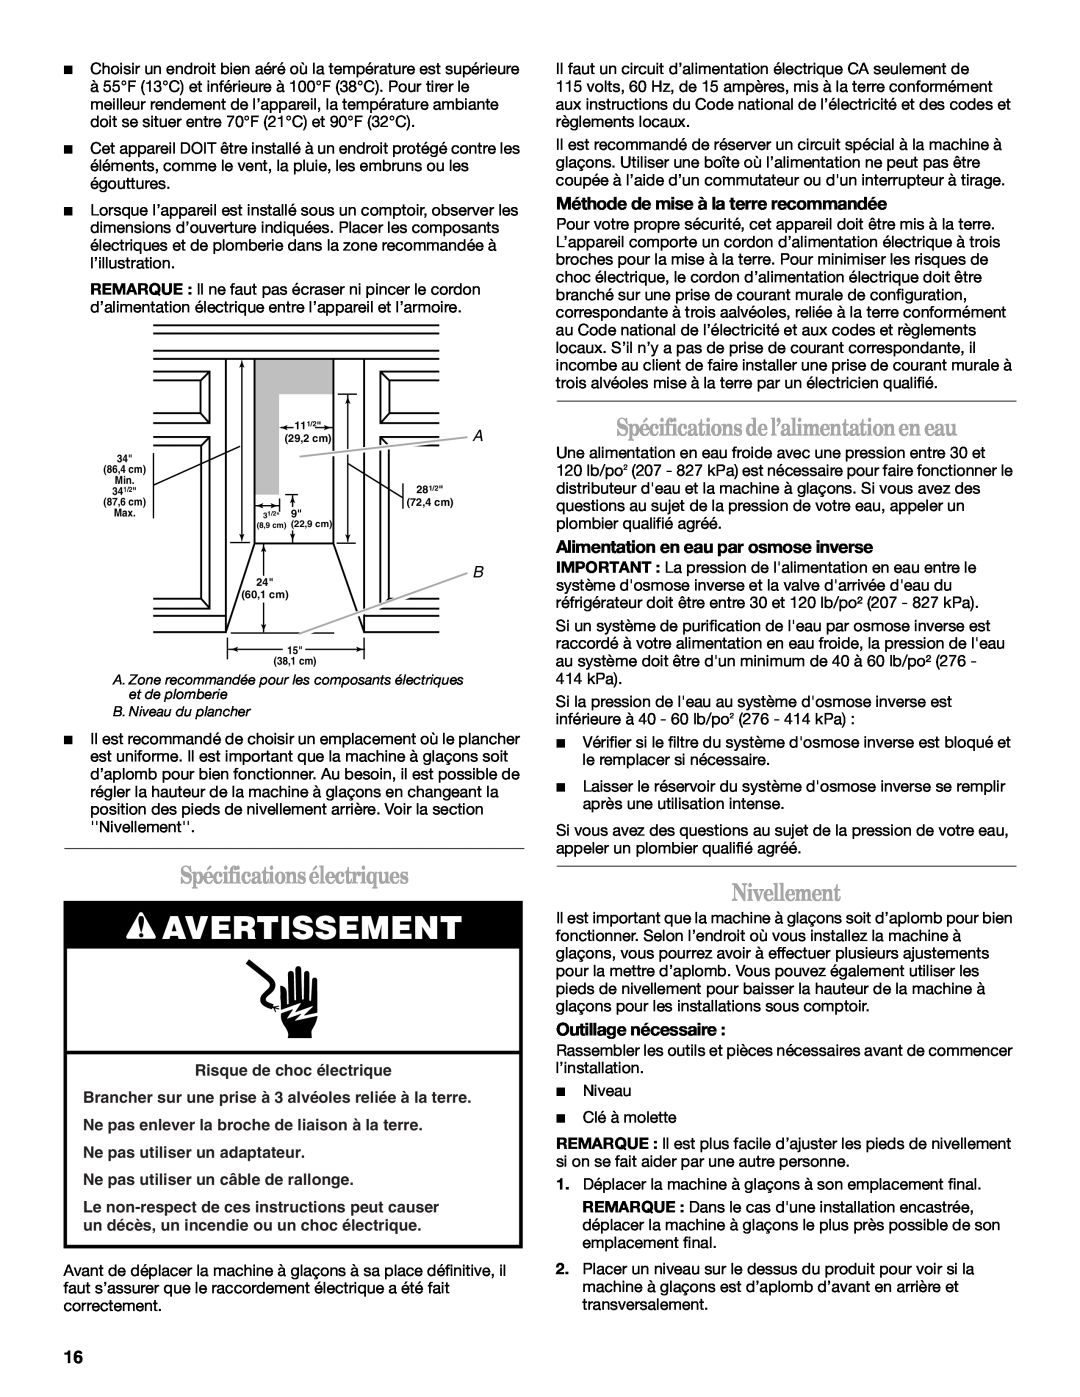 Whirlpool W10136155B manual Spécifications électriques, Spécifications de l’alimentation en eau, Nivellement, Avertissement 